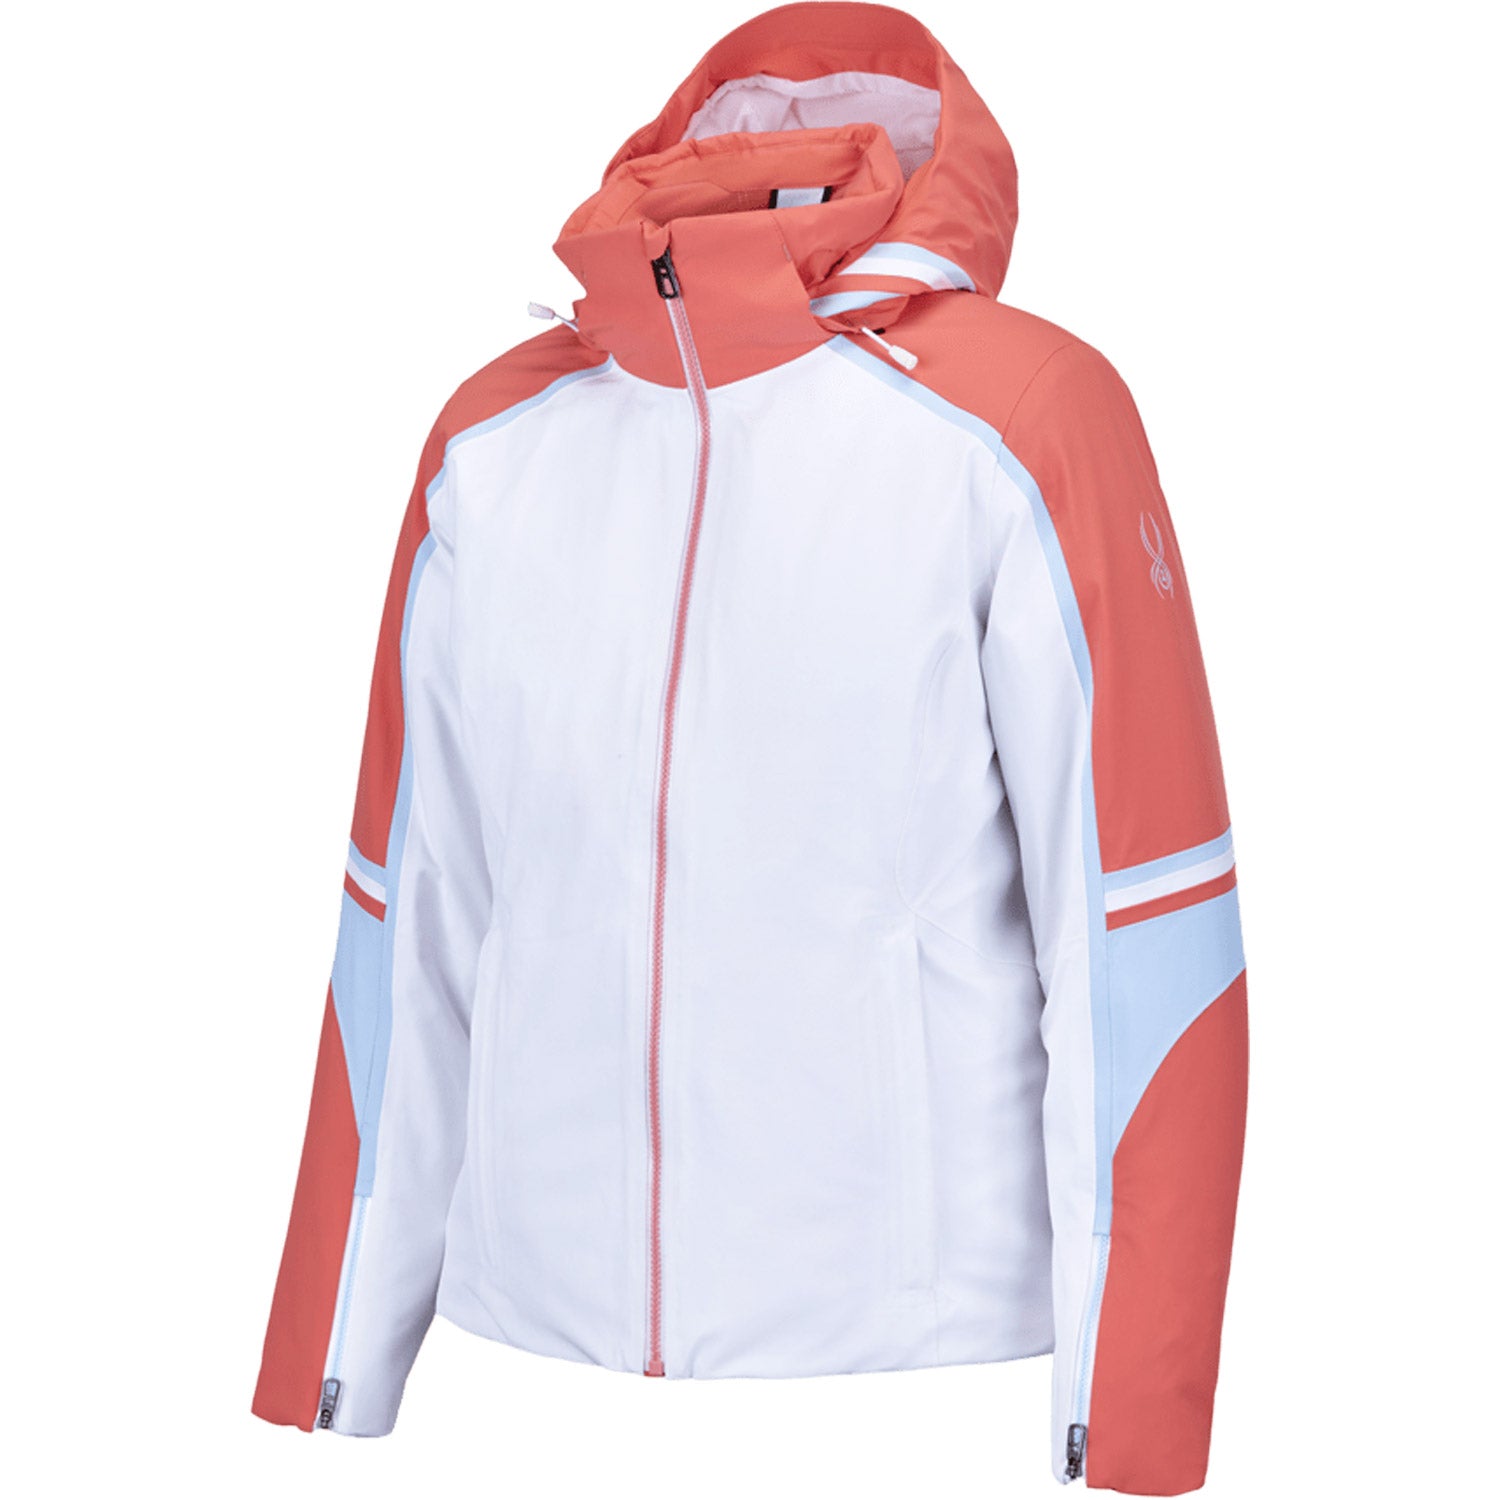 Spyder Poise Ski Jacket White